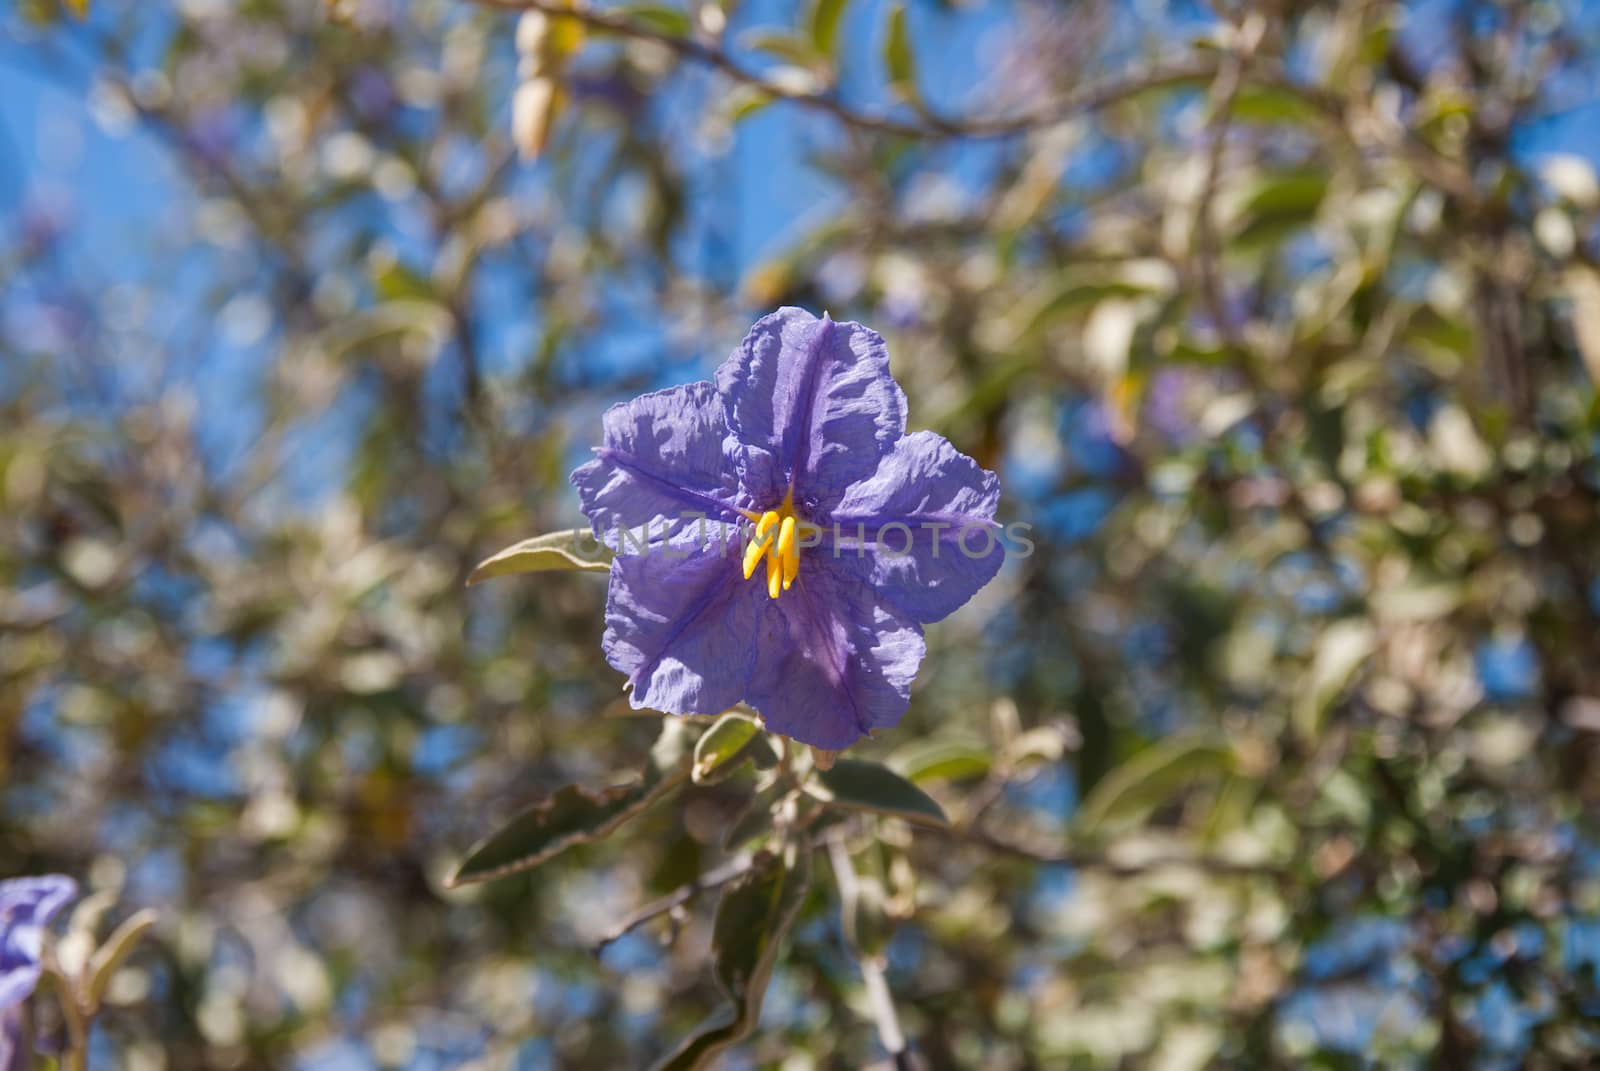 Single Purple flower in the sunlight